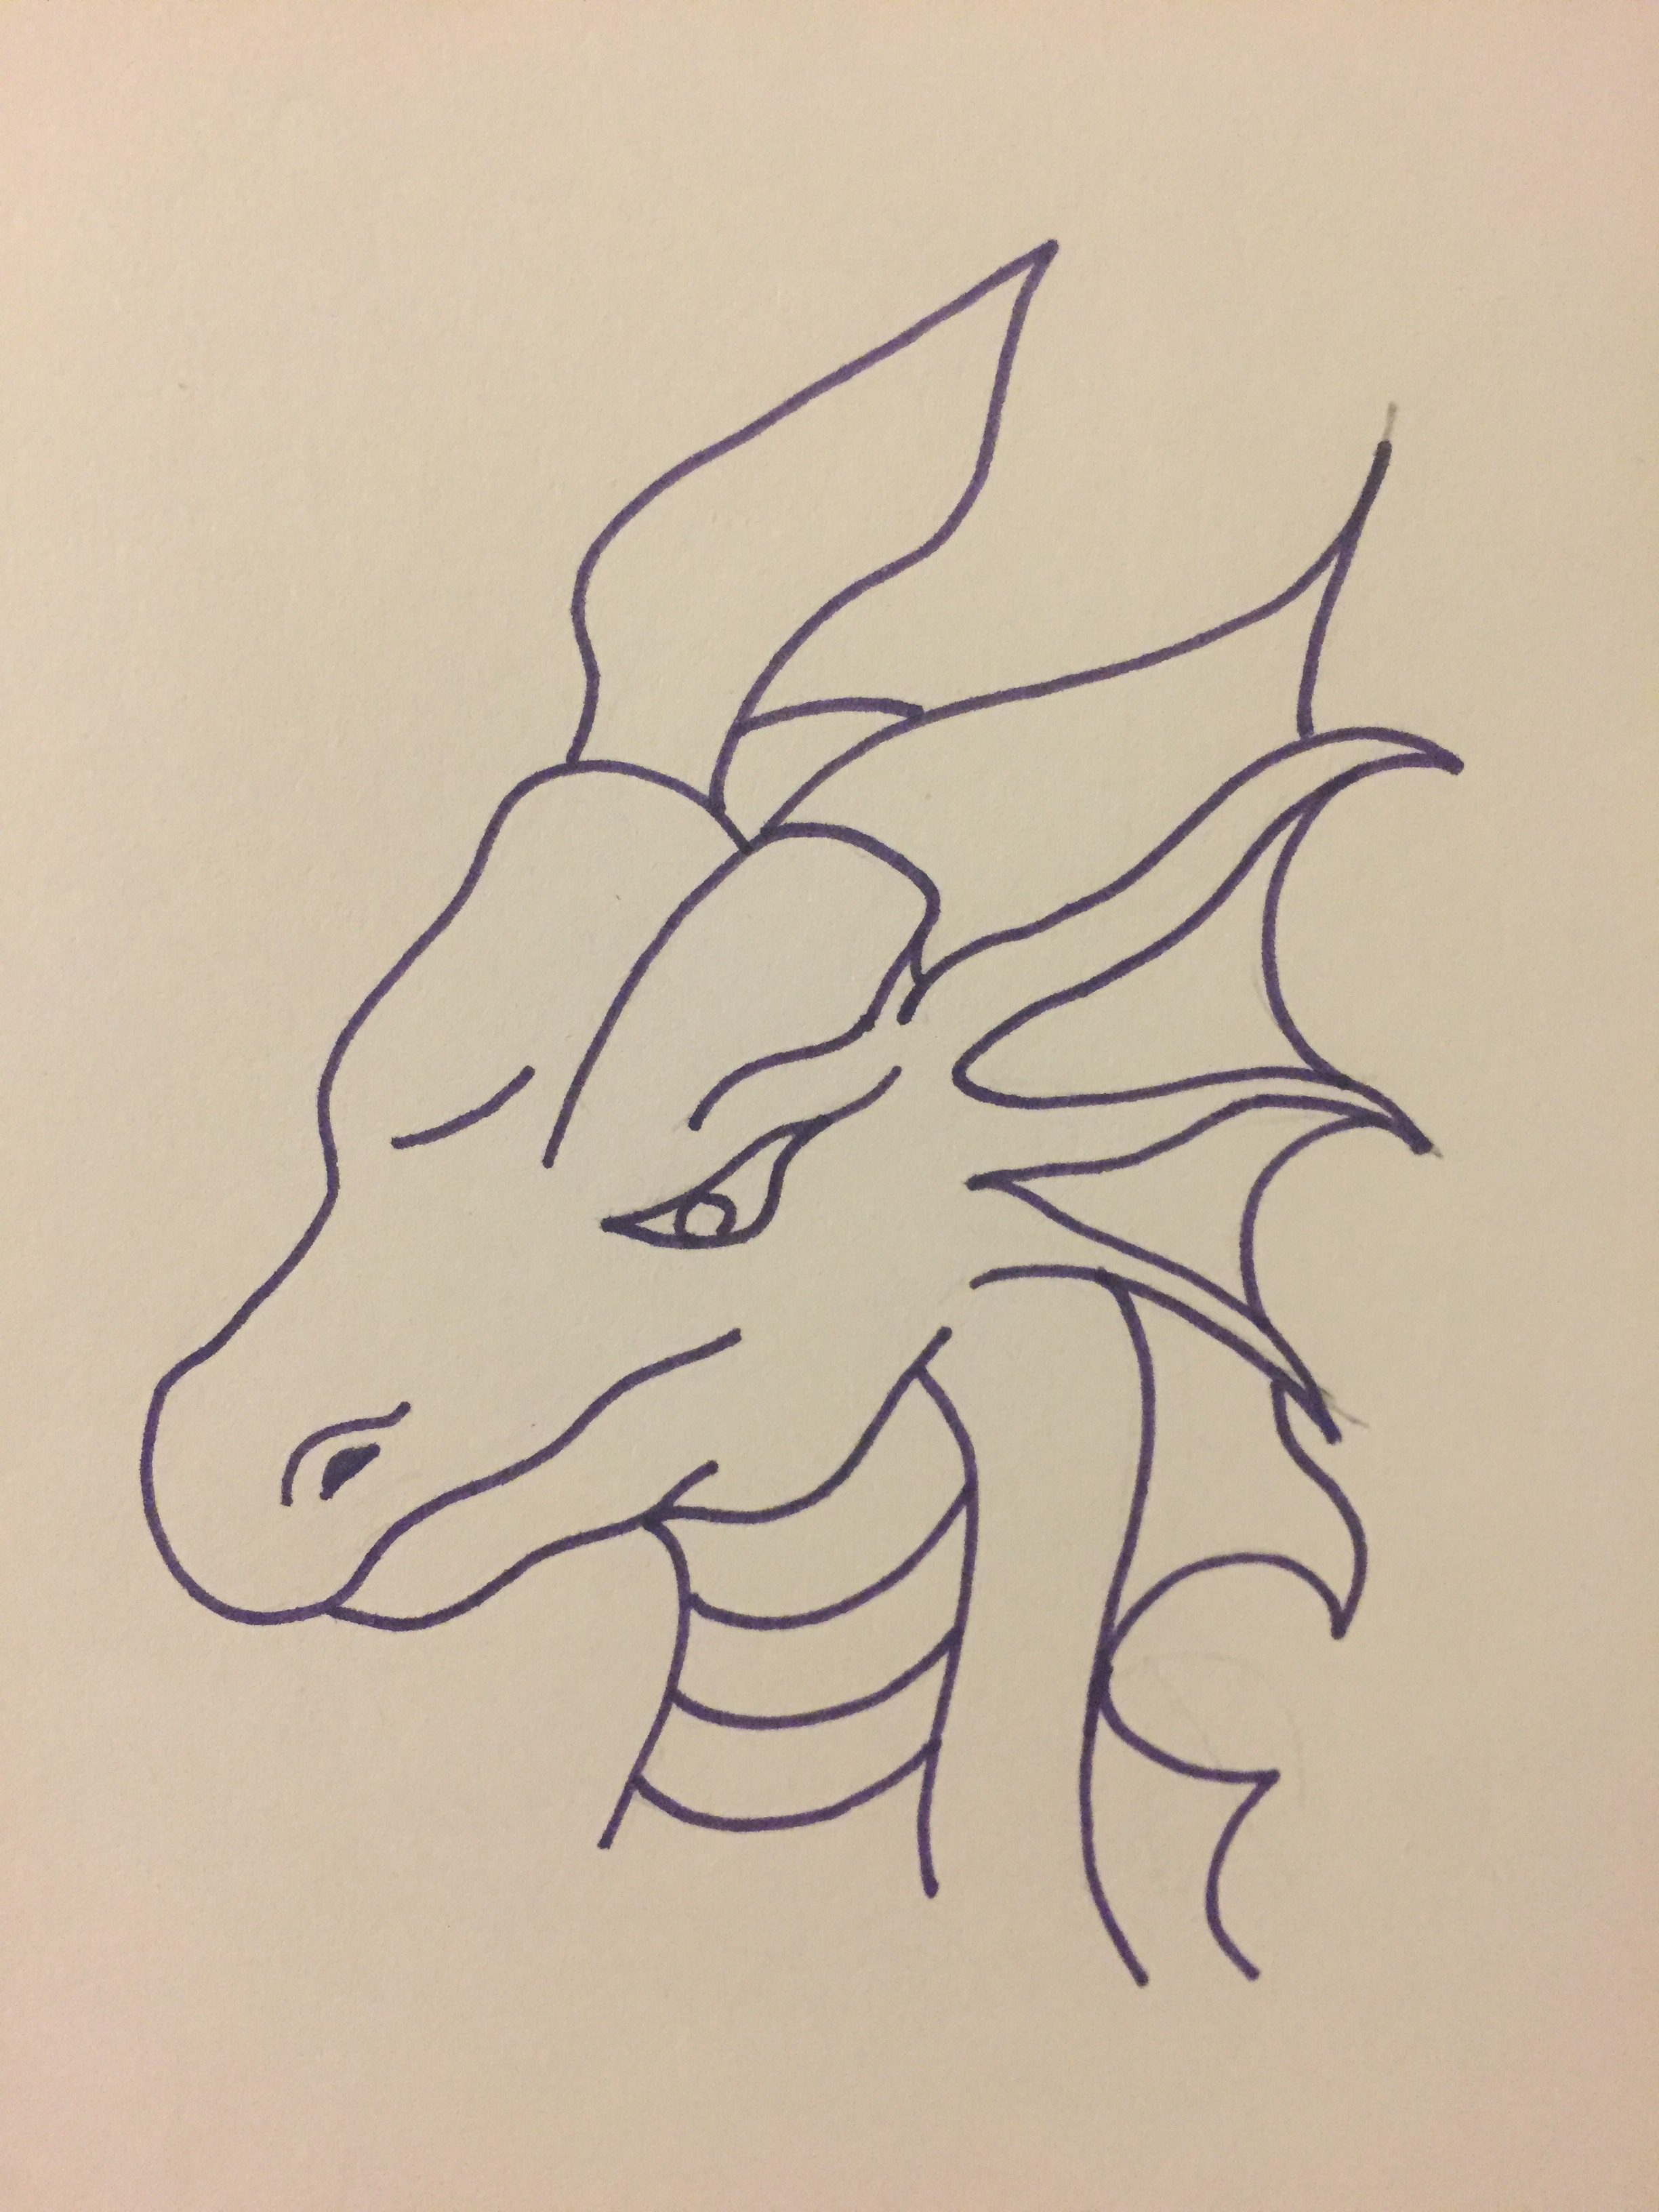 Dragon head in purple ink